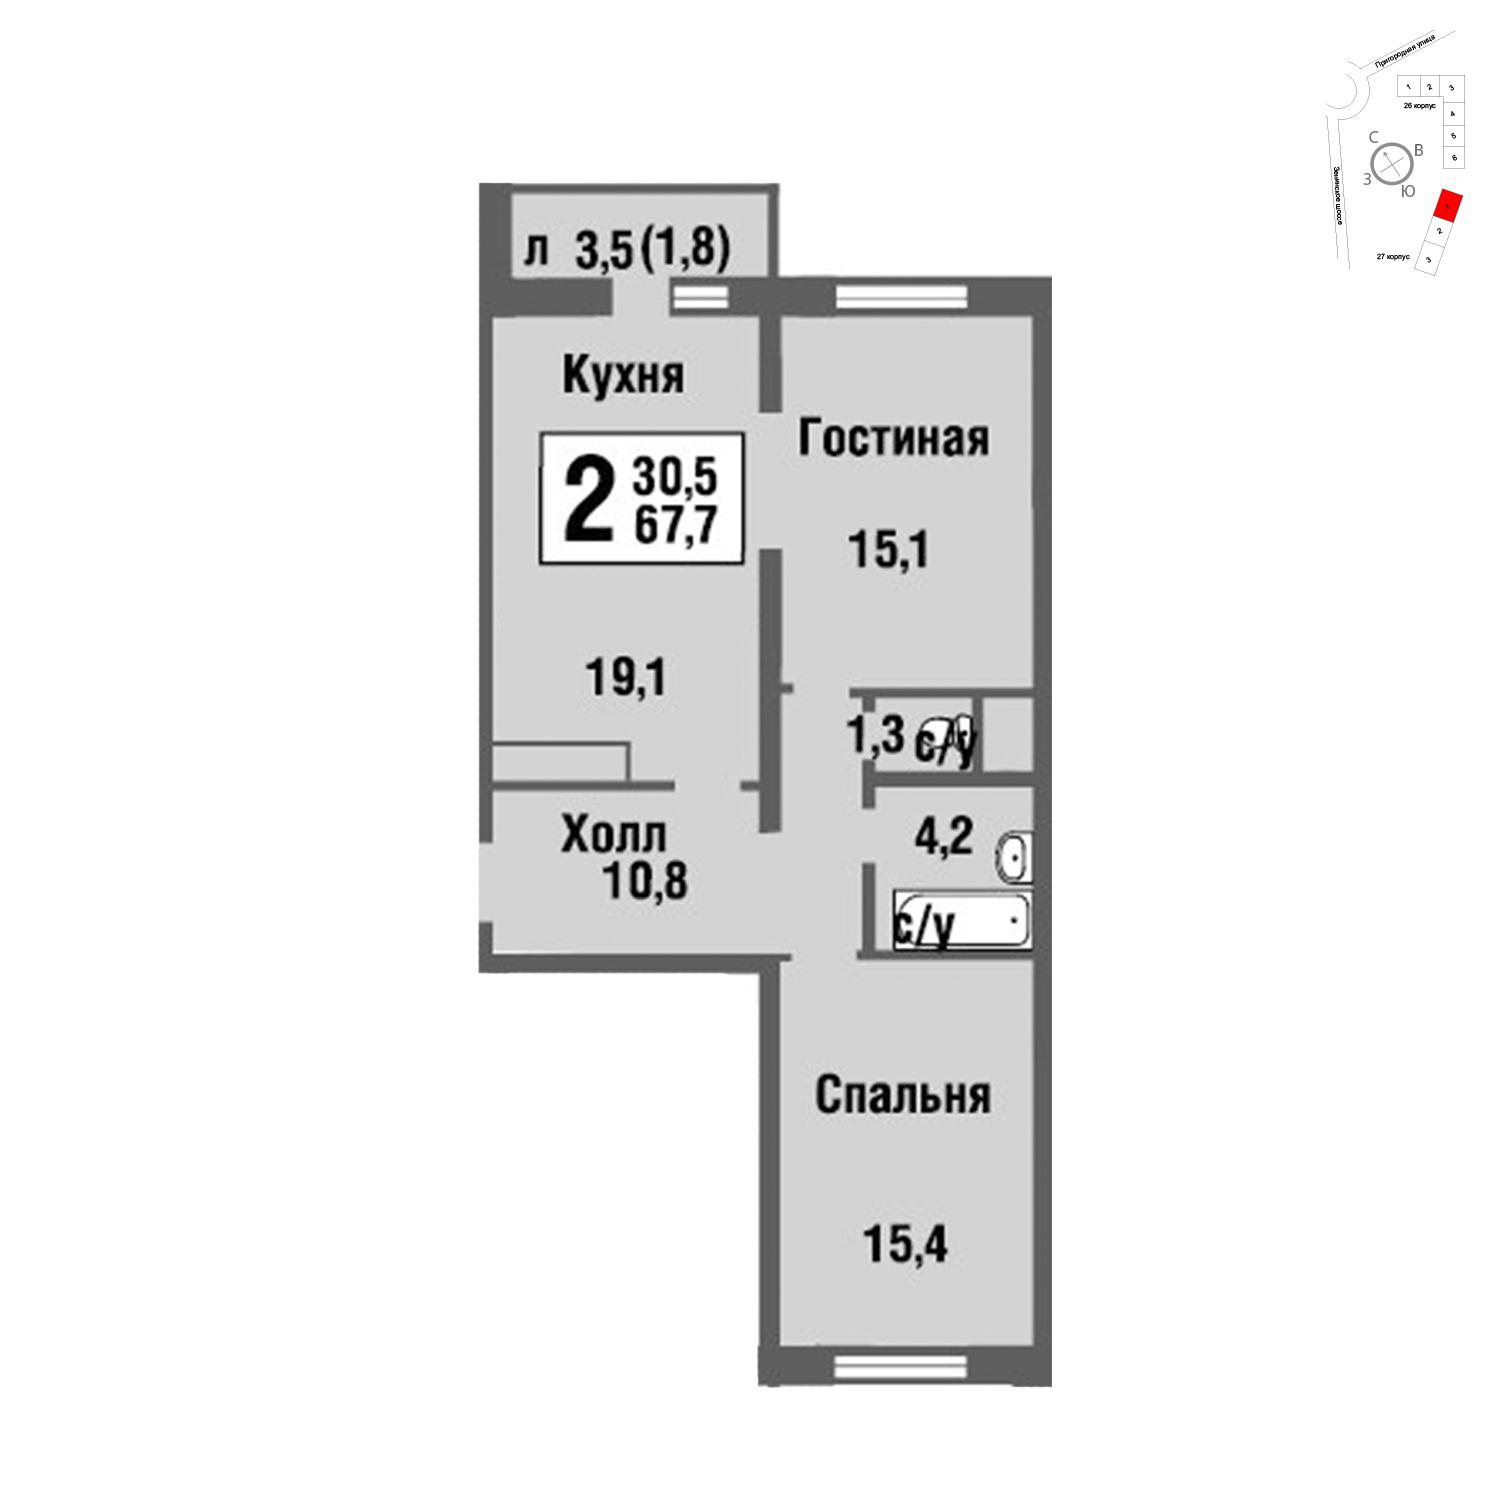 Продаётся 2-комнатная квартира в новостройке 67.9 кв.м. этаж 22/22 за 6 392 785 руб 